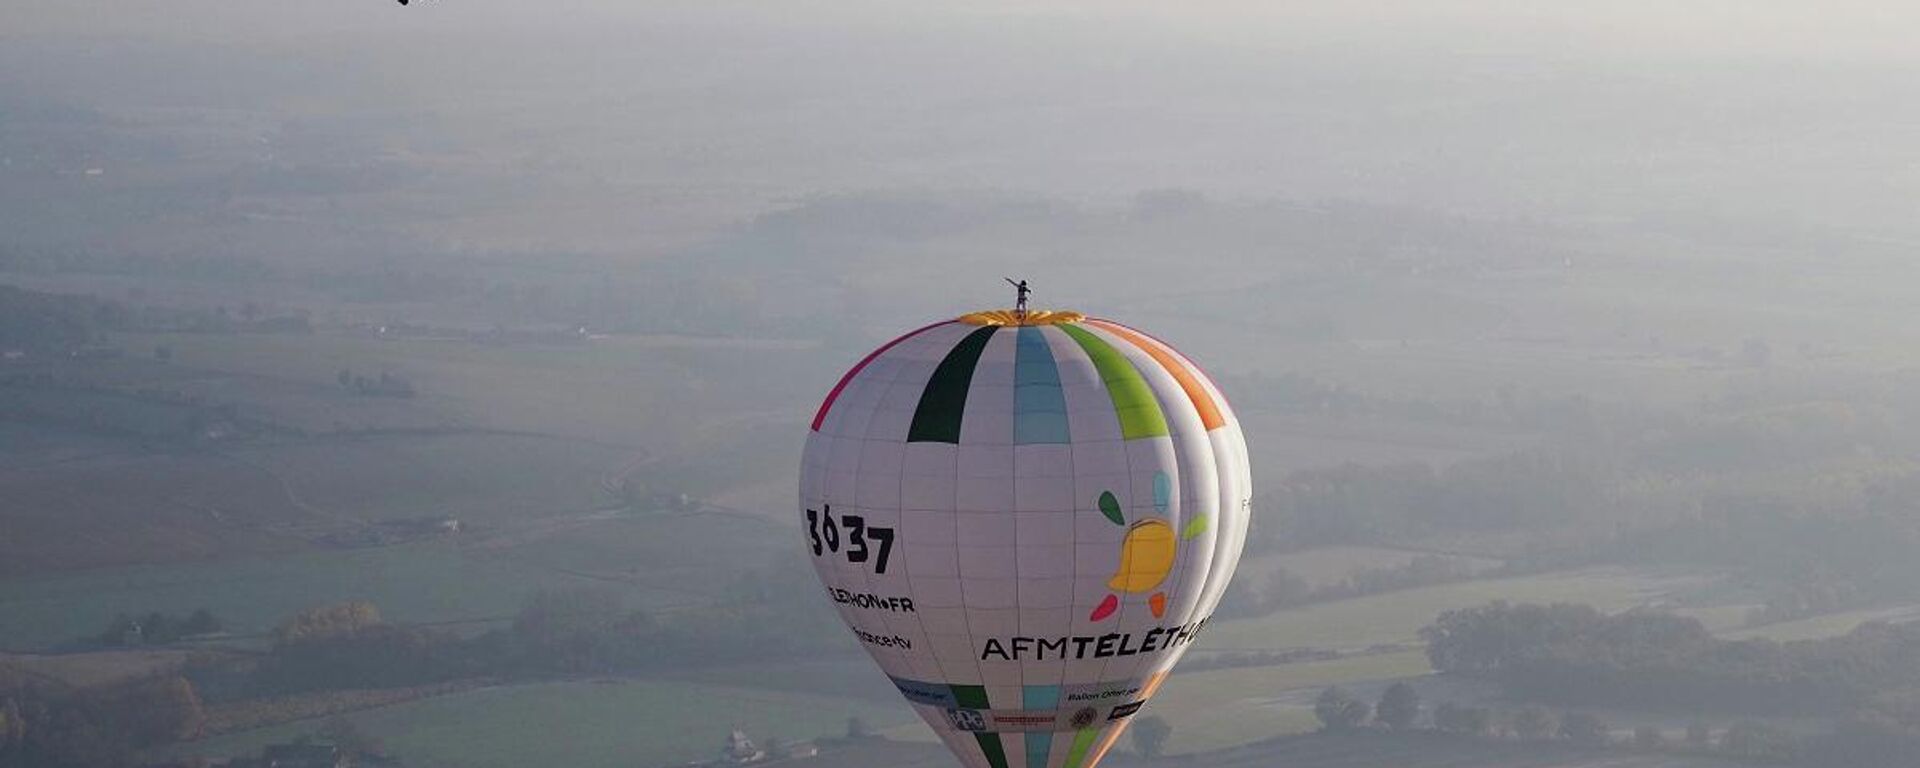 Fransız baloncu Remi Ouvrard, 10 Kasım 2021`de Batı Fransa'da sıcak hava balonu üzerinde rekor kırdı. - Sputnik Türkiye, 1920, 11.11.2021